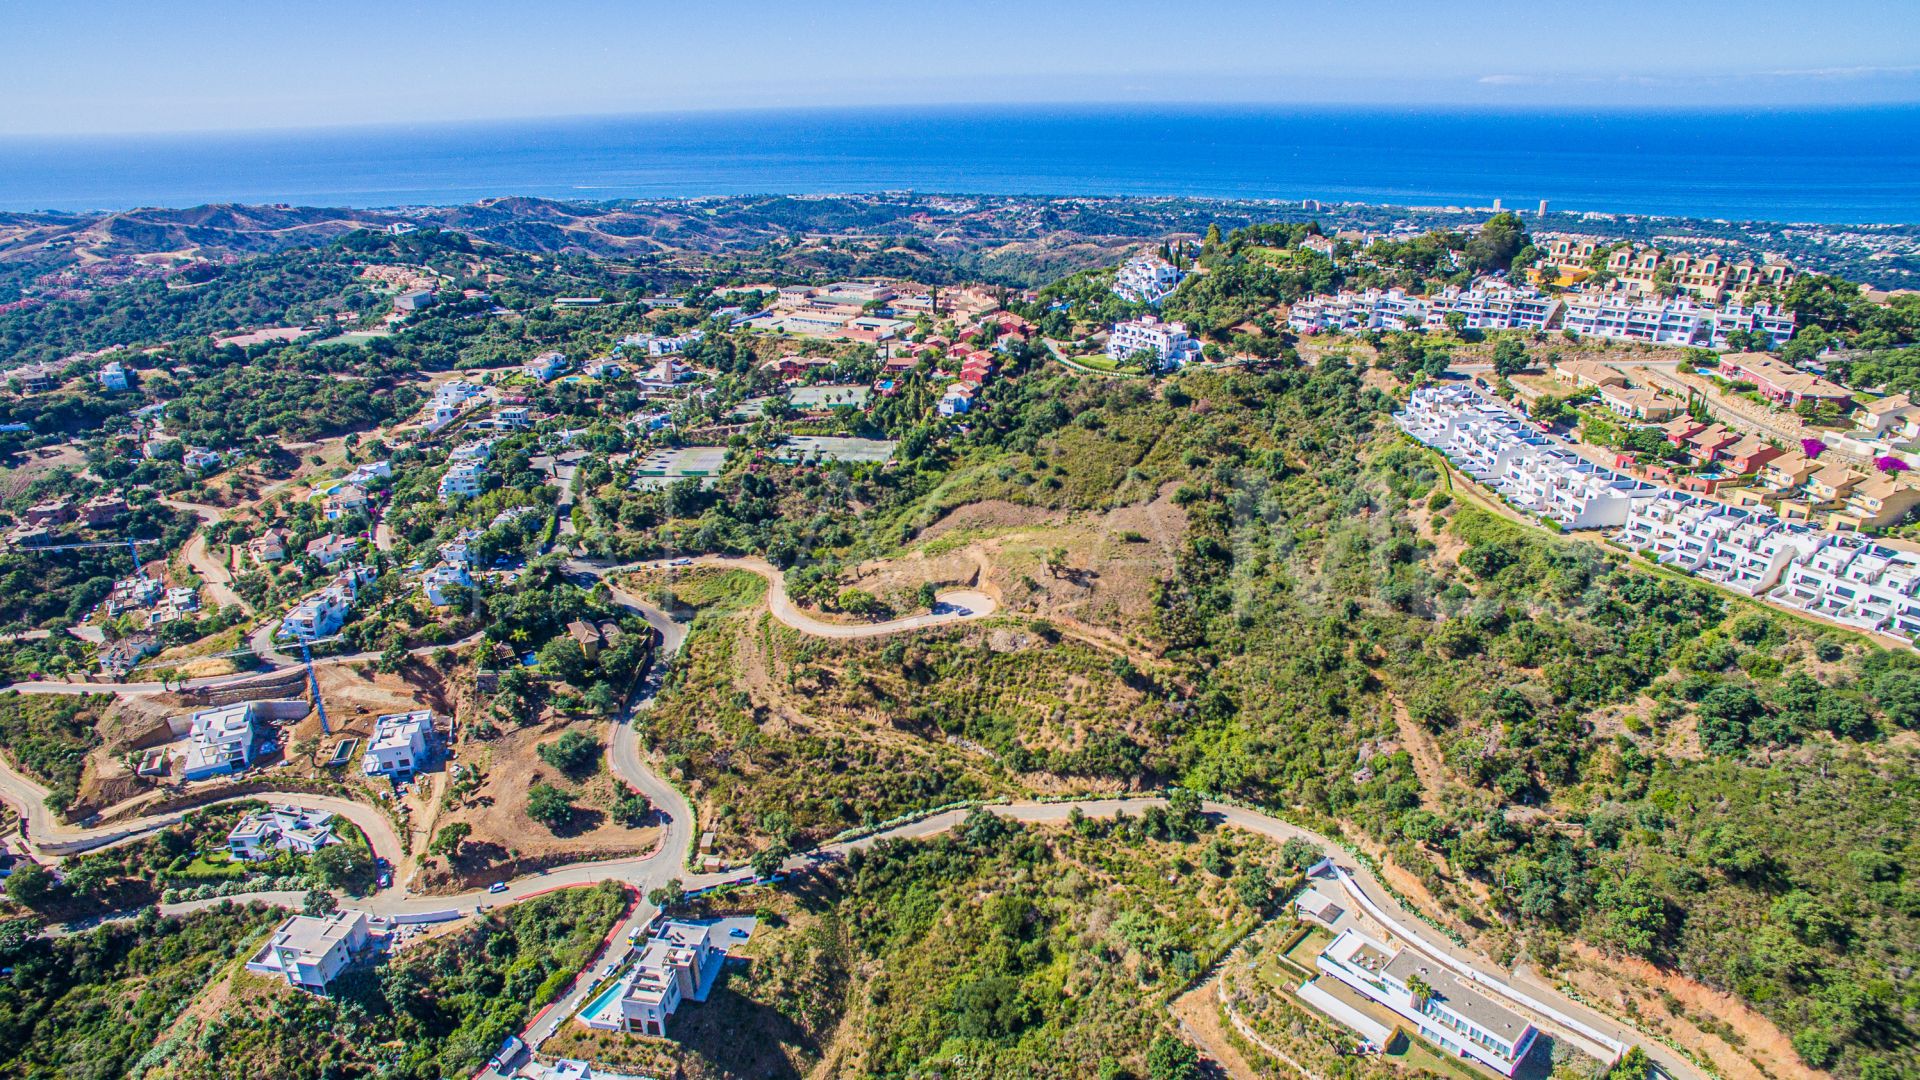 Terrain for sale in Marbella Est